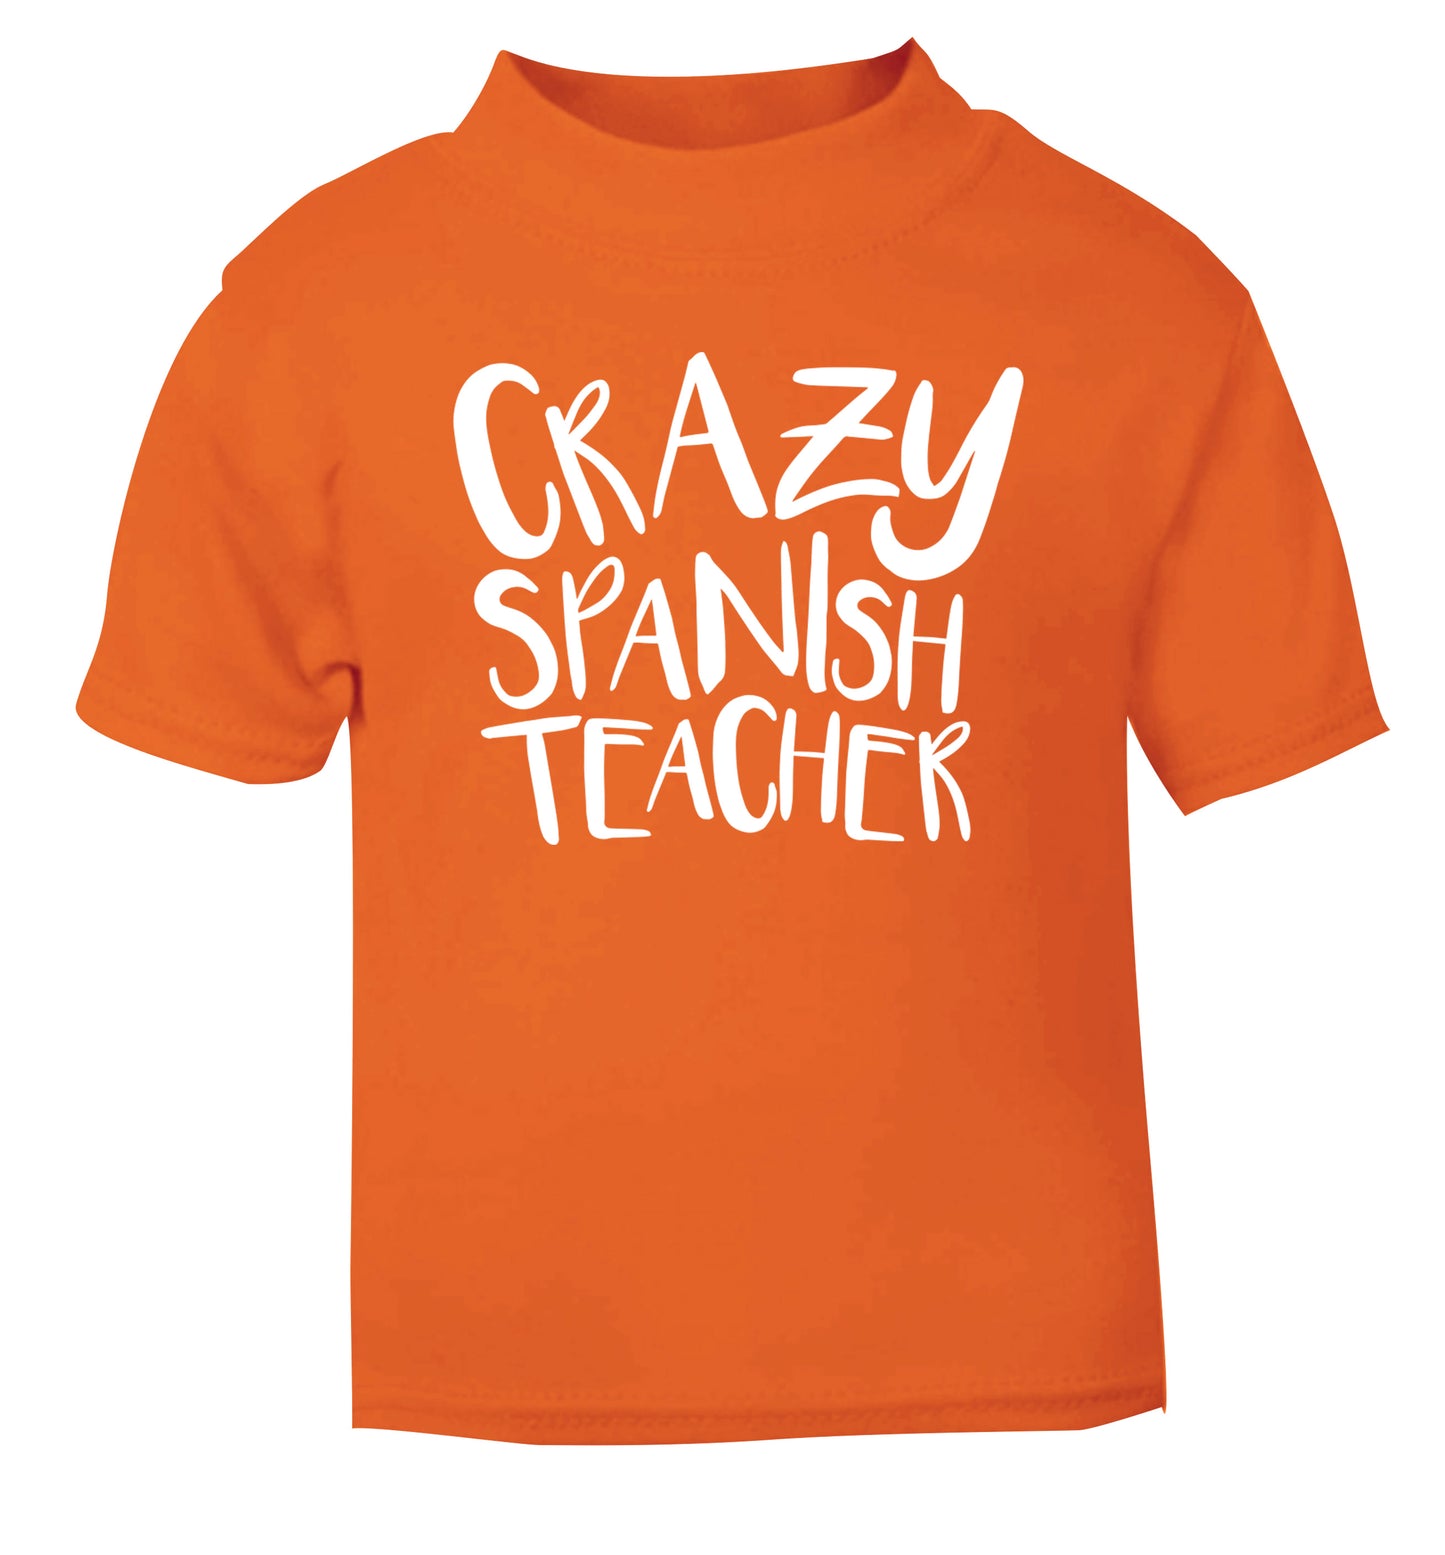 Crazy spanish teacher orange Baby Toddler Tshirt 2 Years